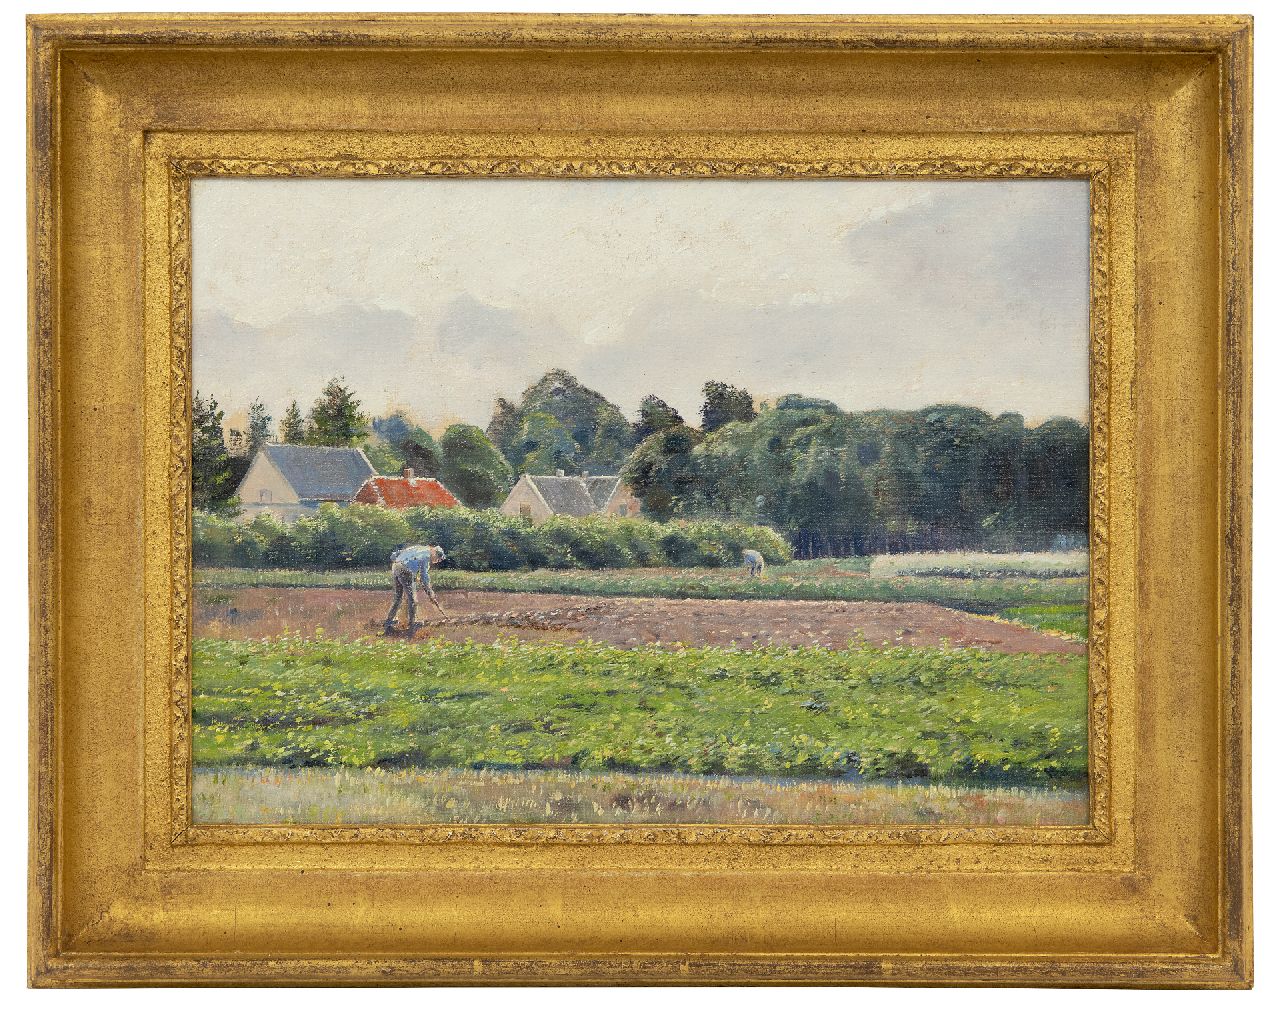 Stricker C.L.  | Charles Ludwig Stricker | Schilderijen te koop aangeboden | Landschap te Ede, augustus 1918, olieverf op doek op board 25,1 x 34,5 cm, te dateren augustus 1918